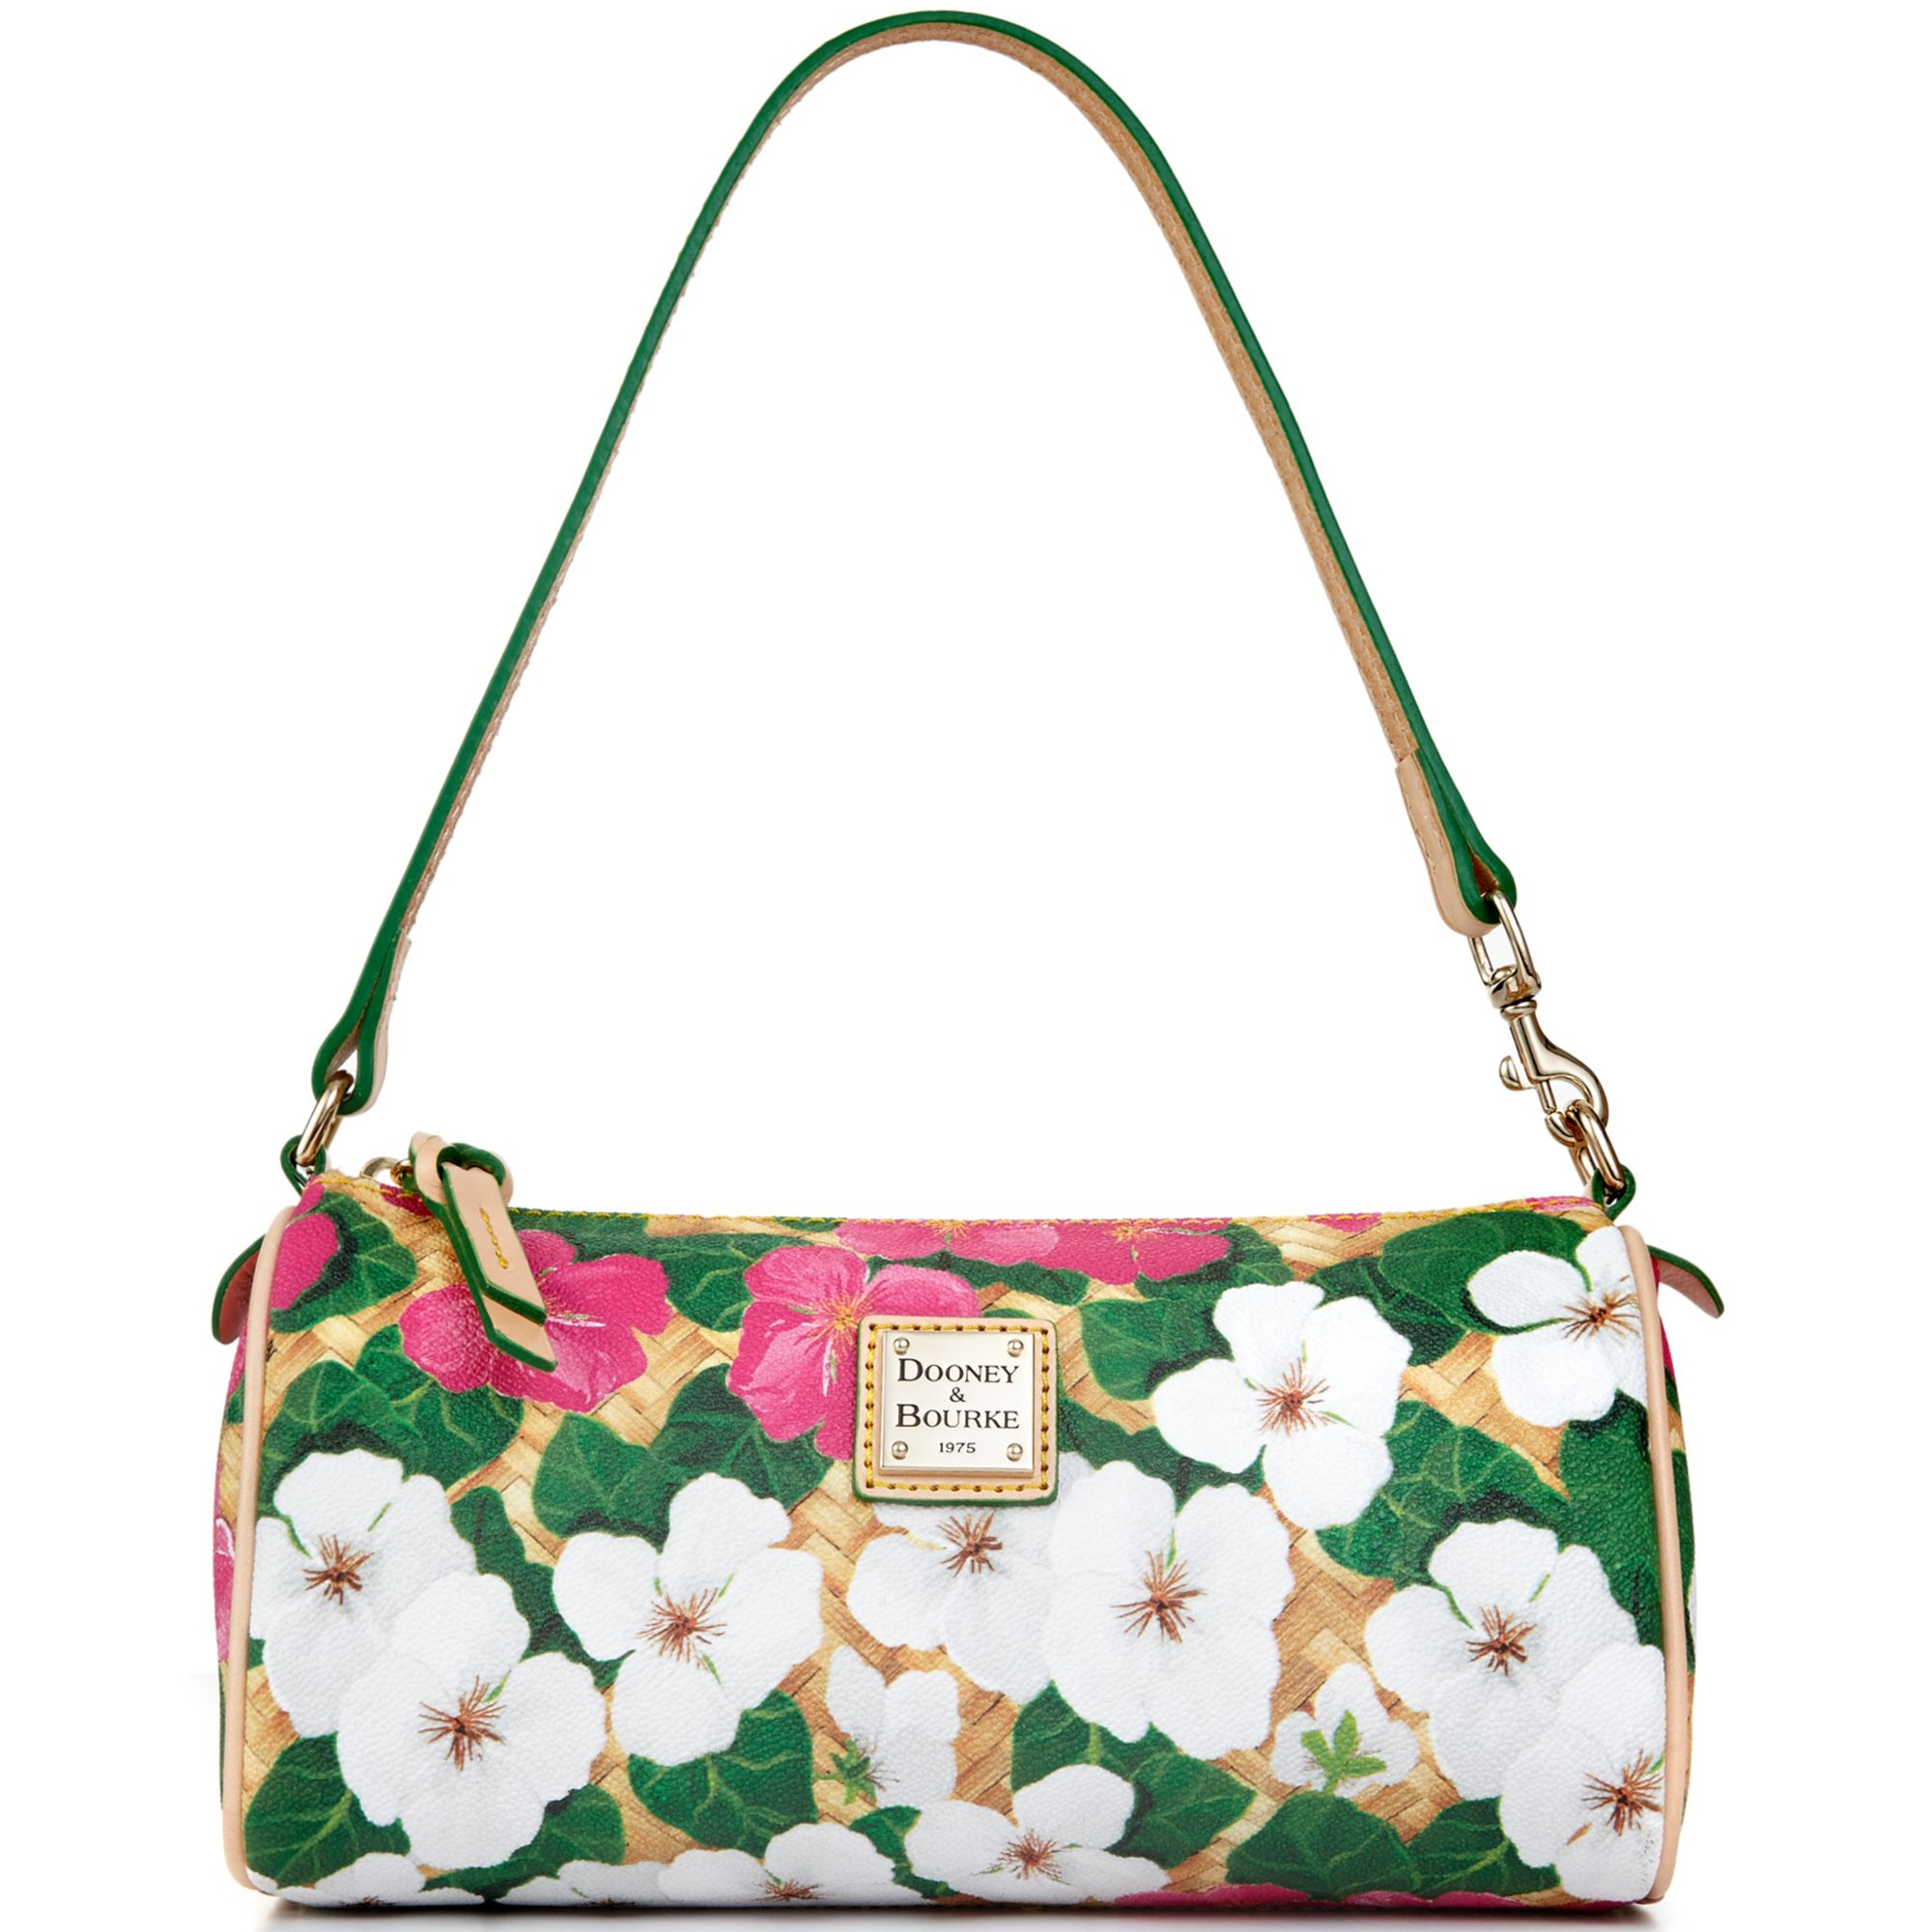 Lyst - Dooney & bourke Flowers Small Barrel Bag in Green